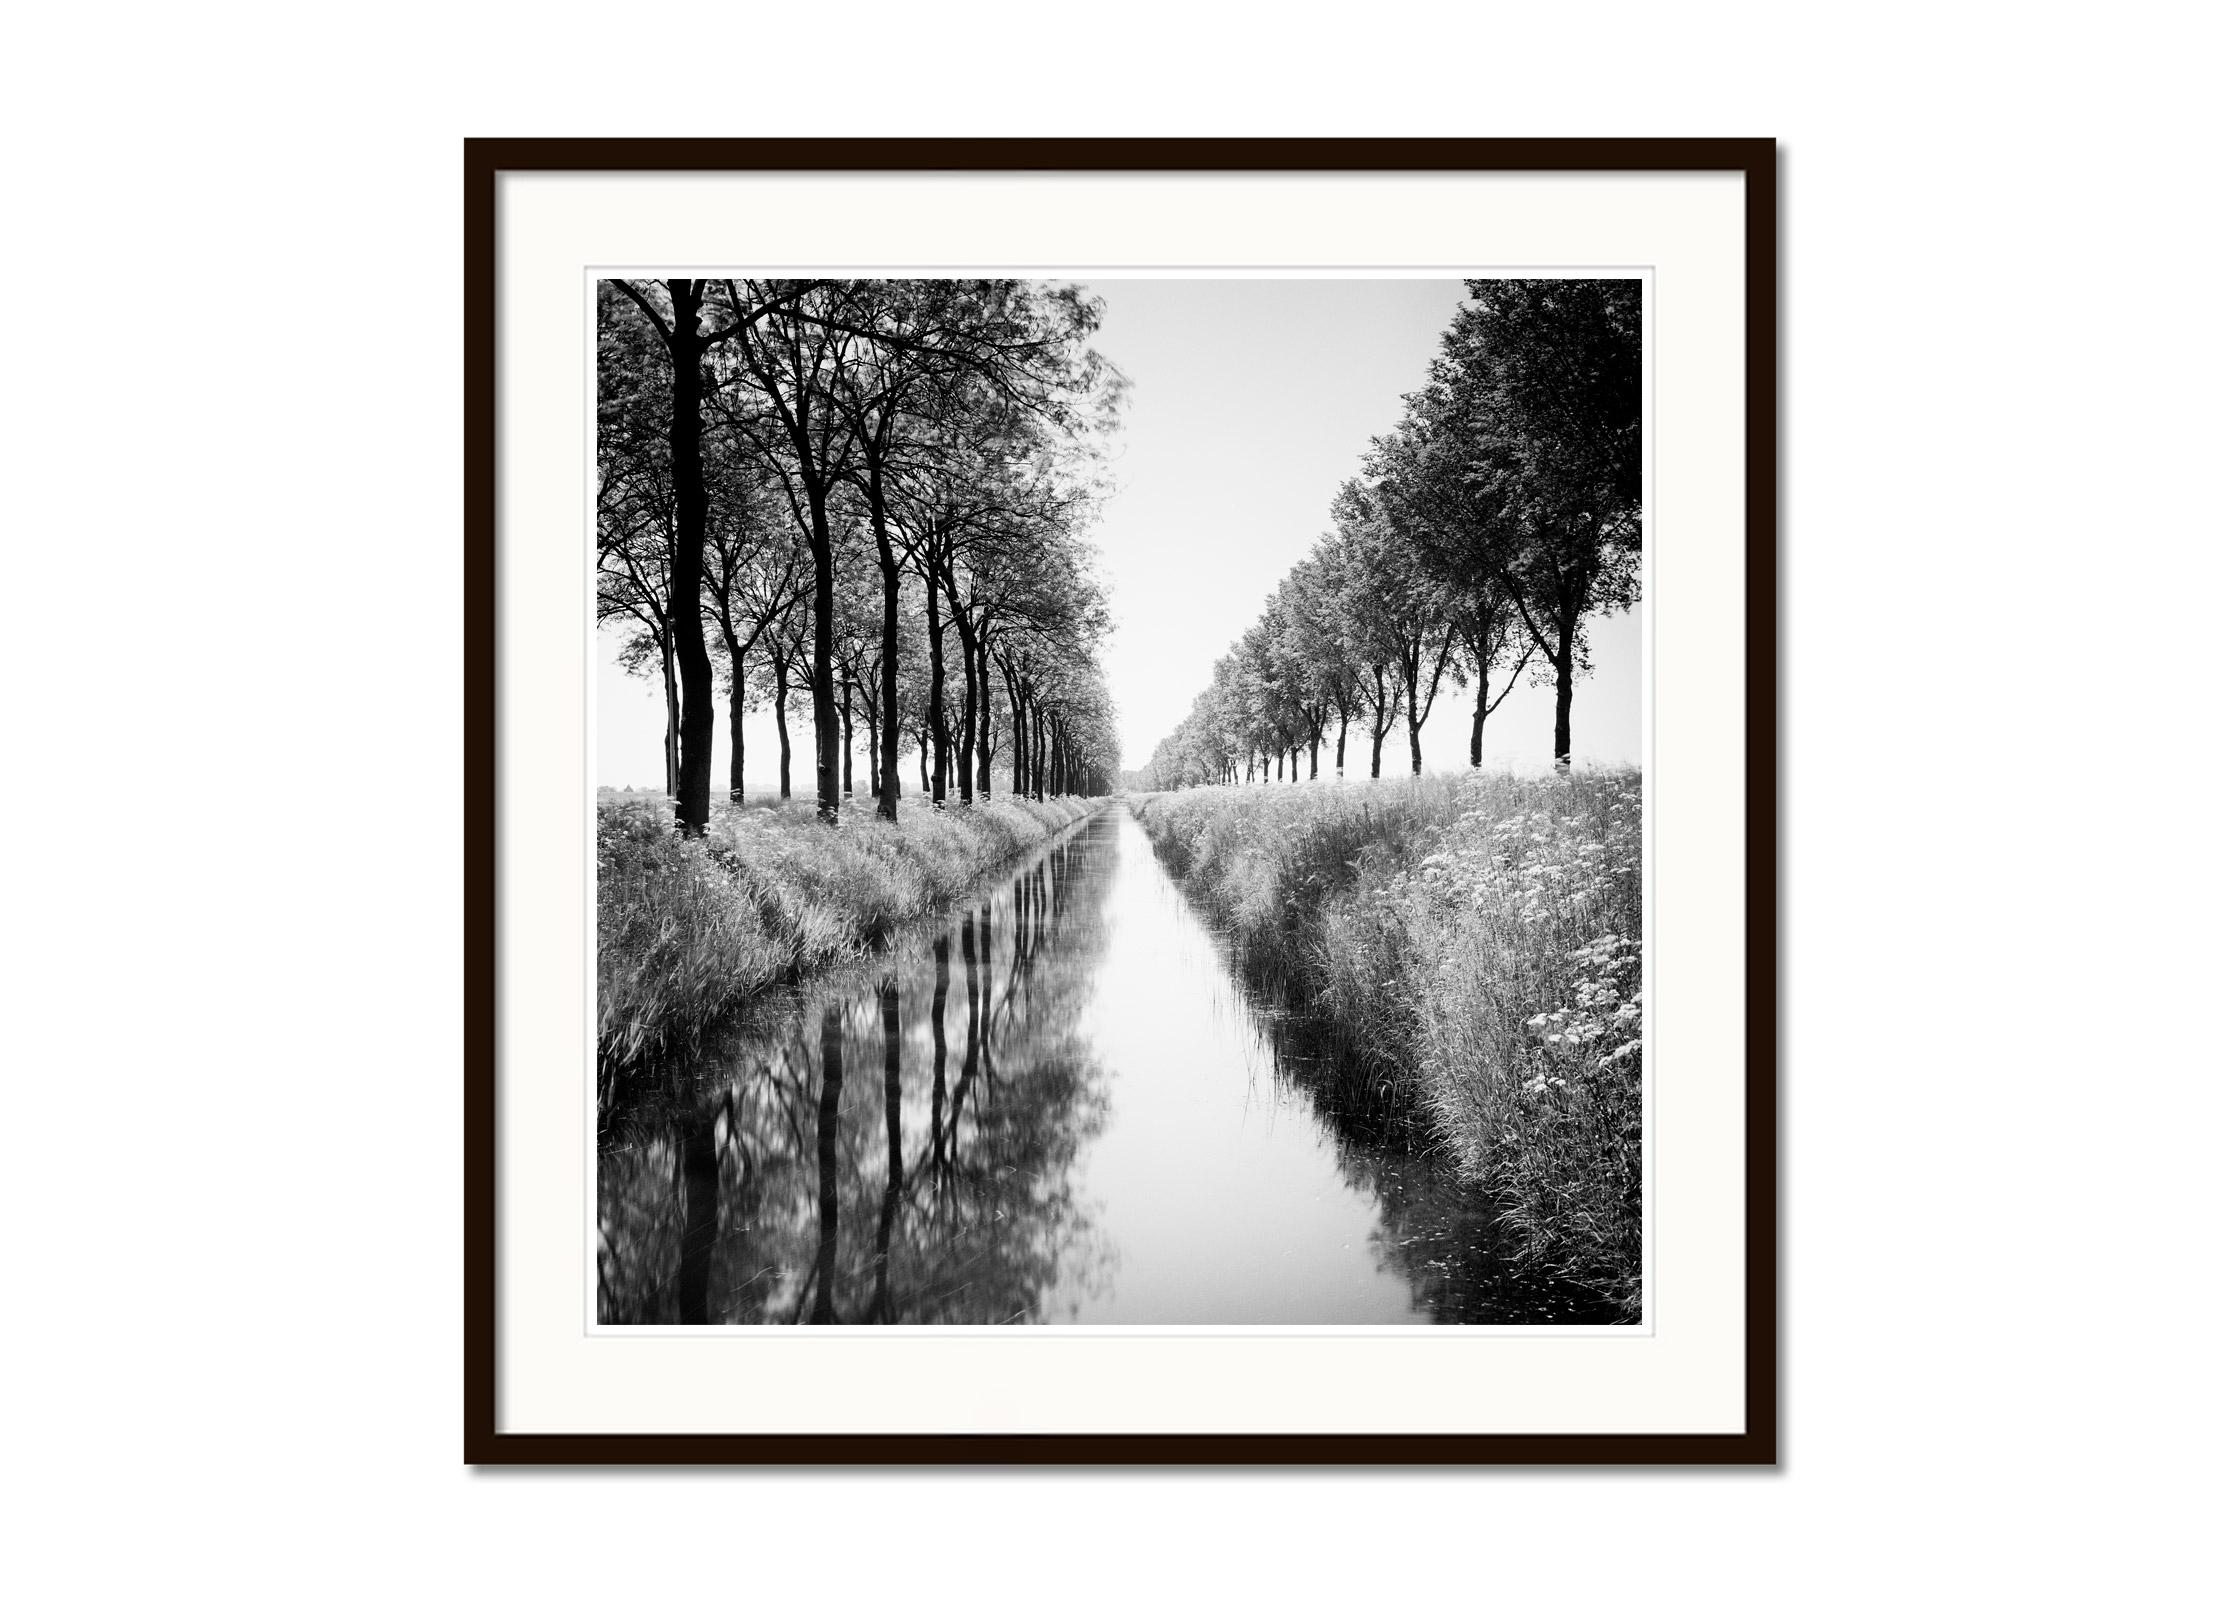 Black and White Fine Art Waterscape Photography - Allee von Bäumen an einem Wassergraben mit Reflexionen im ruhigen Wasser. Pigmenttintendruck, Auflage 5, signiert, betitelt, datiert und nummeriert vom Künstler. Mit Echtheitszertifikat. Bedruckt mit